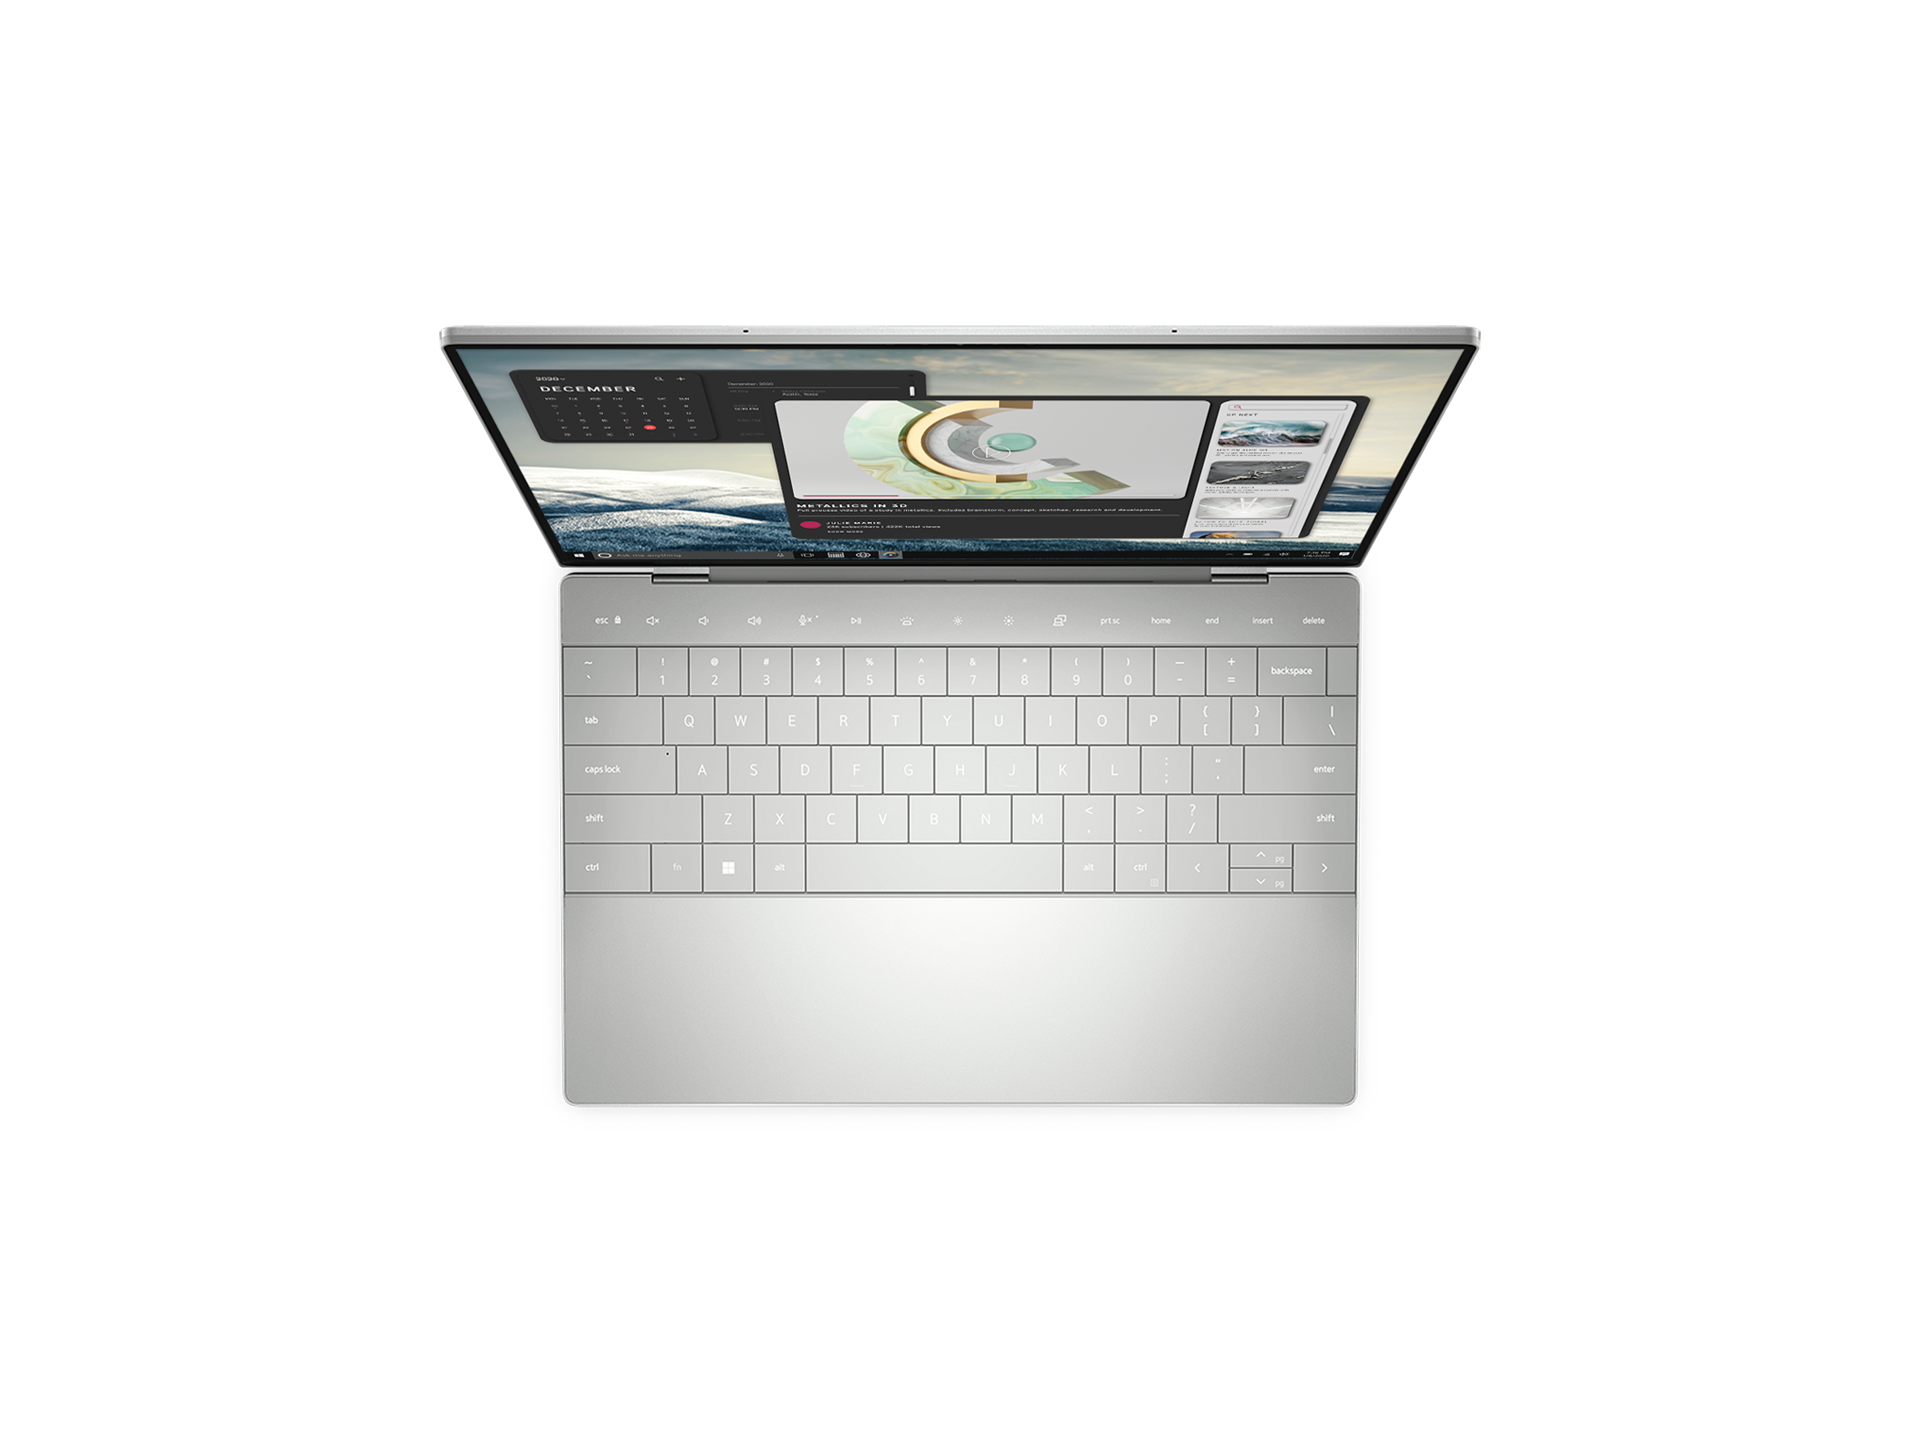 XPS Laptop - Topview